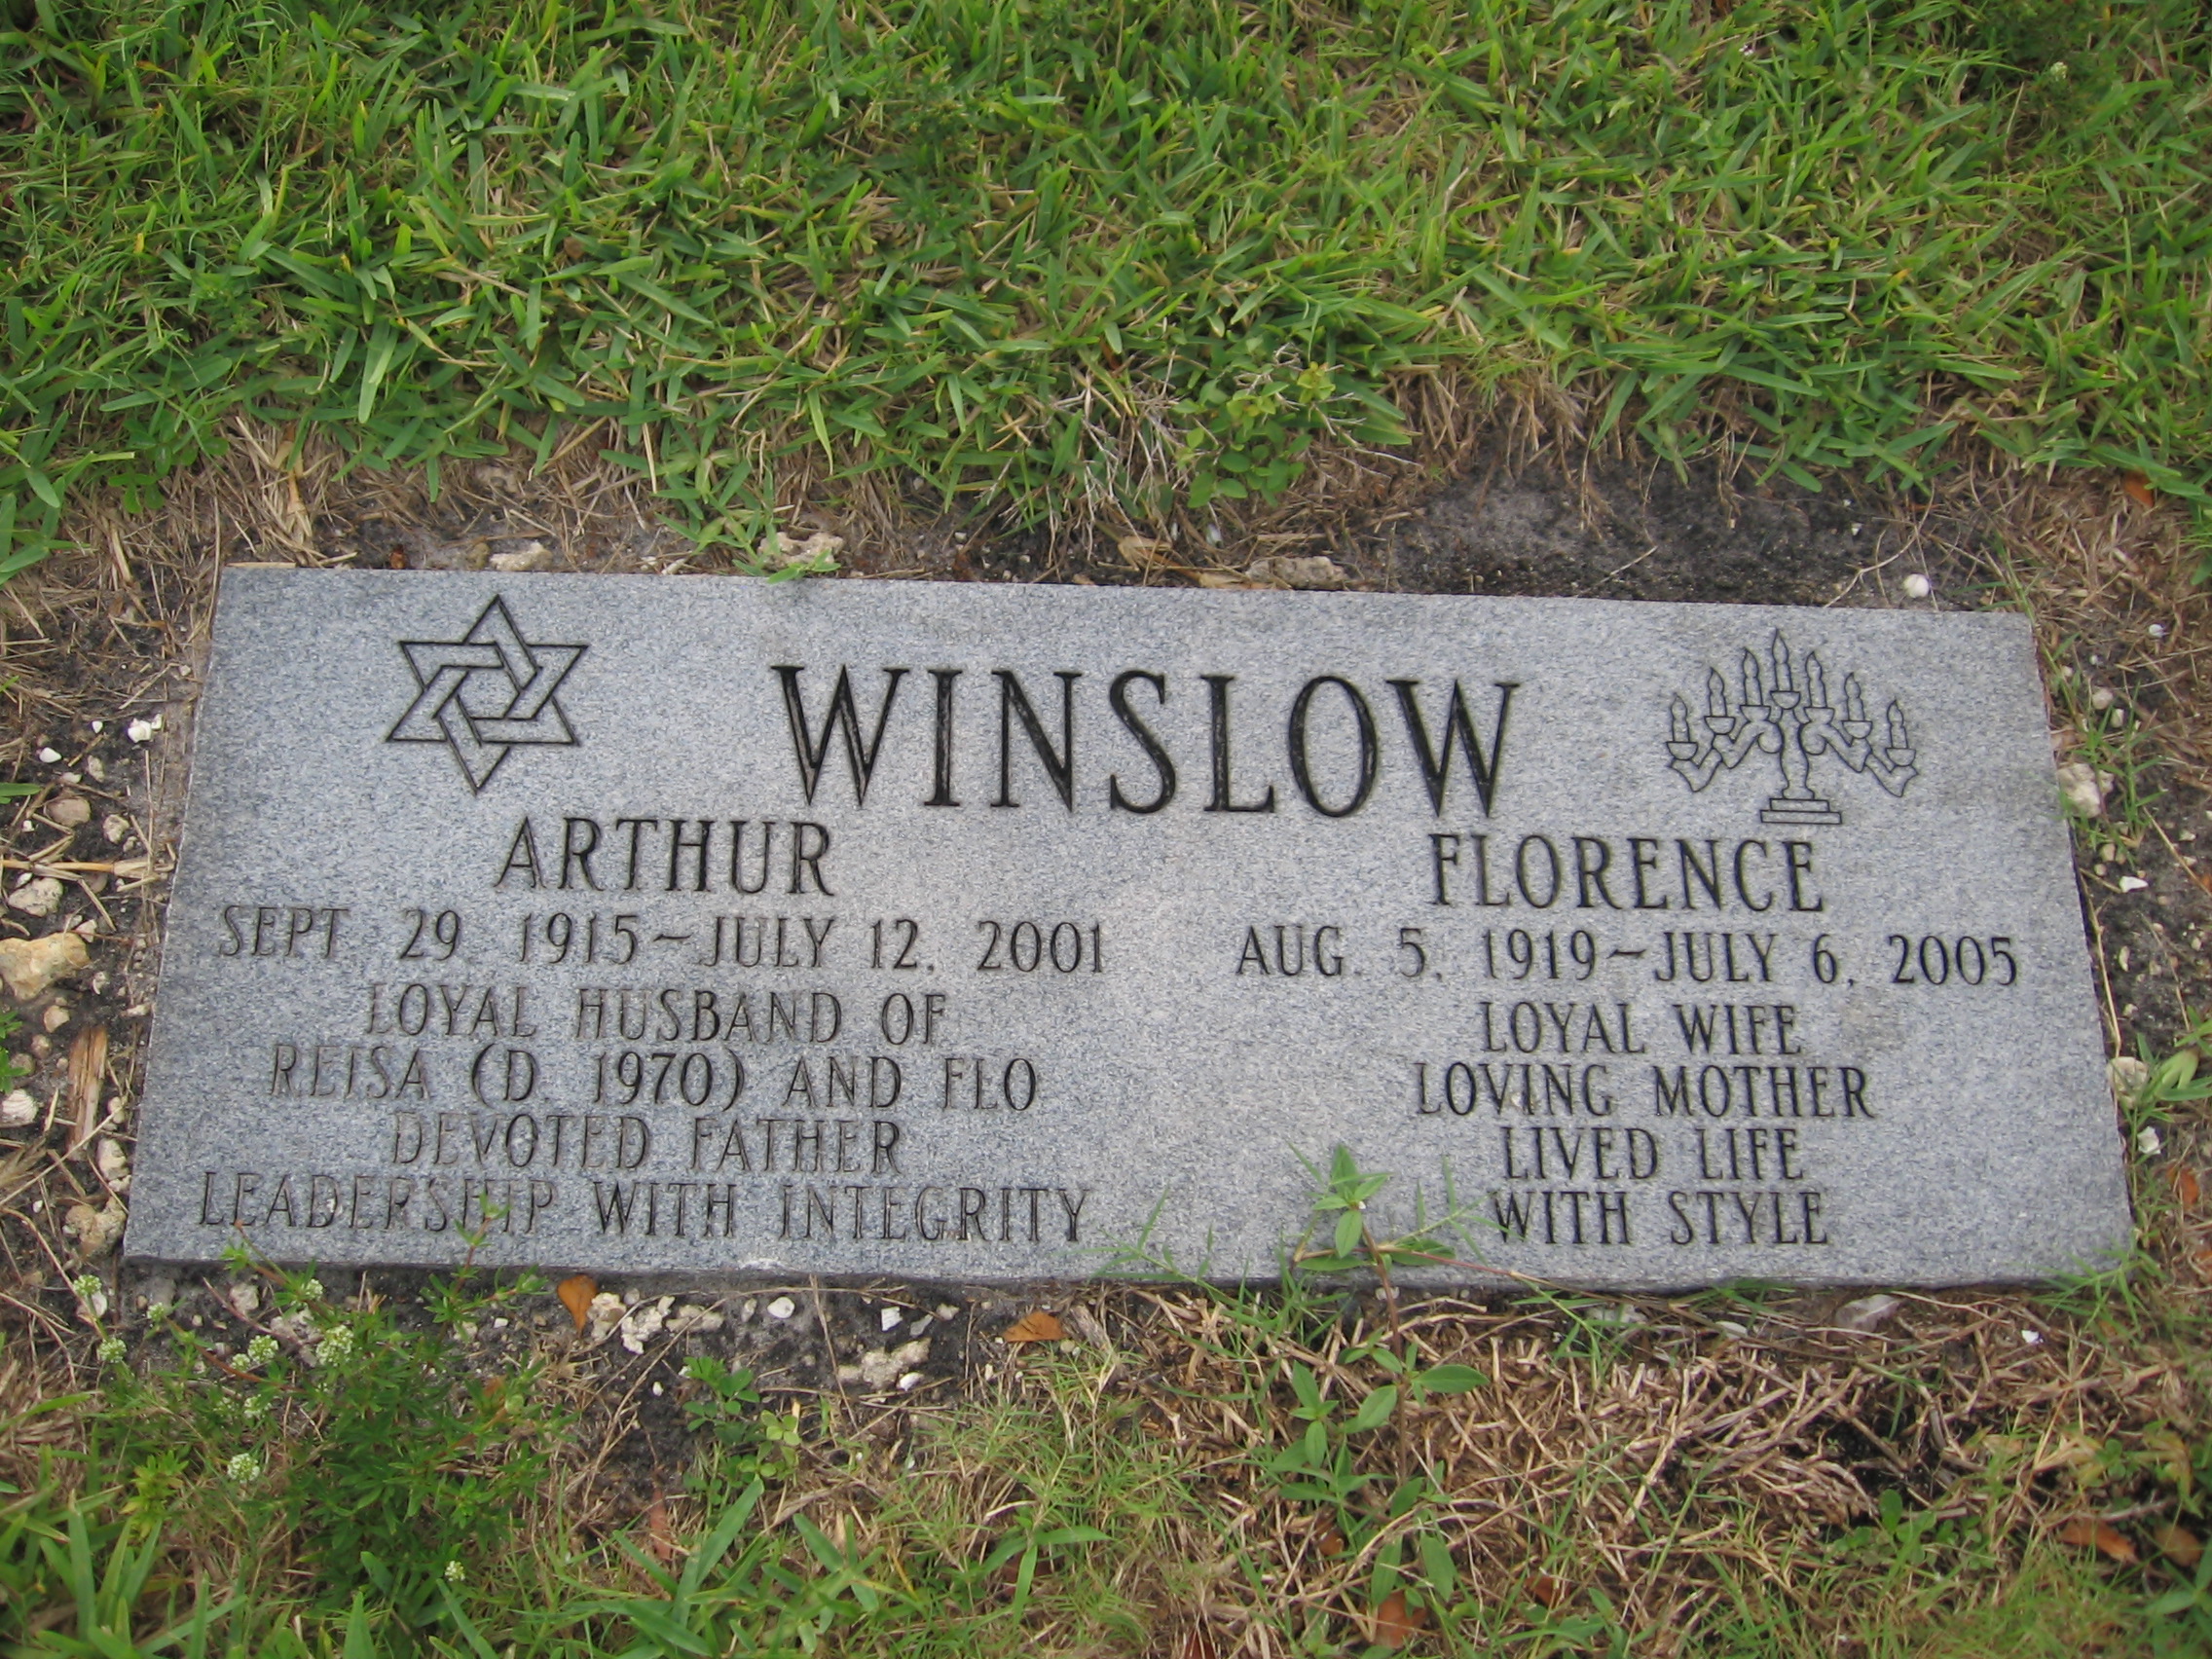 Arthur Winslow